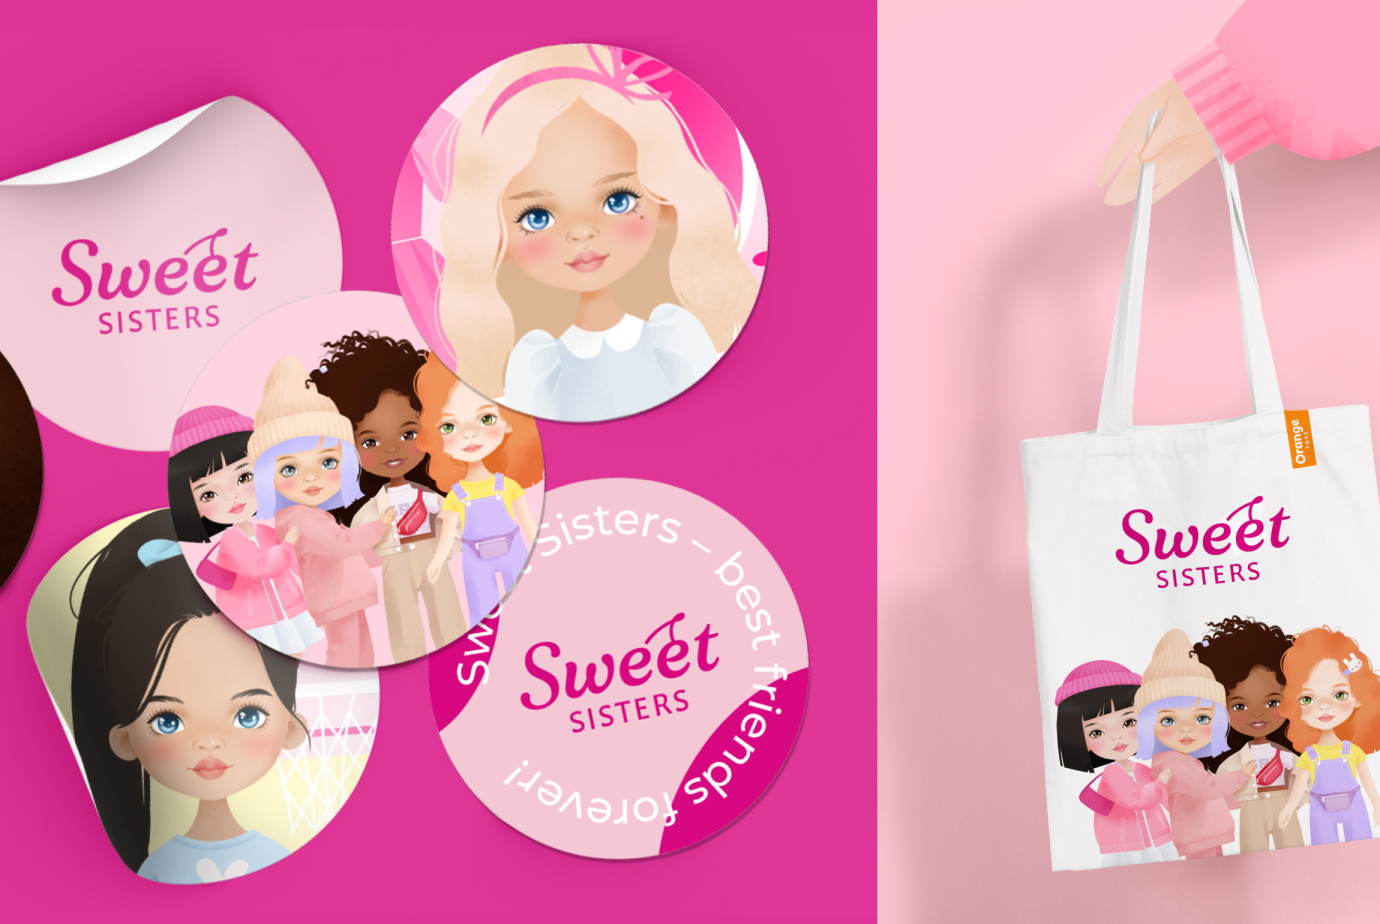 Создание бренда и разработка дизайна рекламы Sweet Sisters